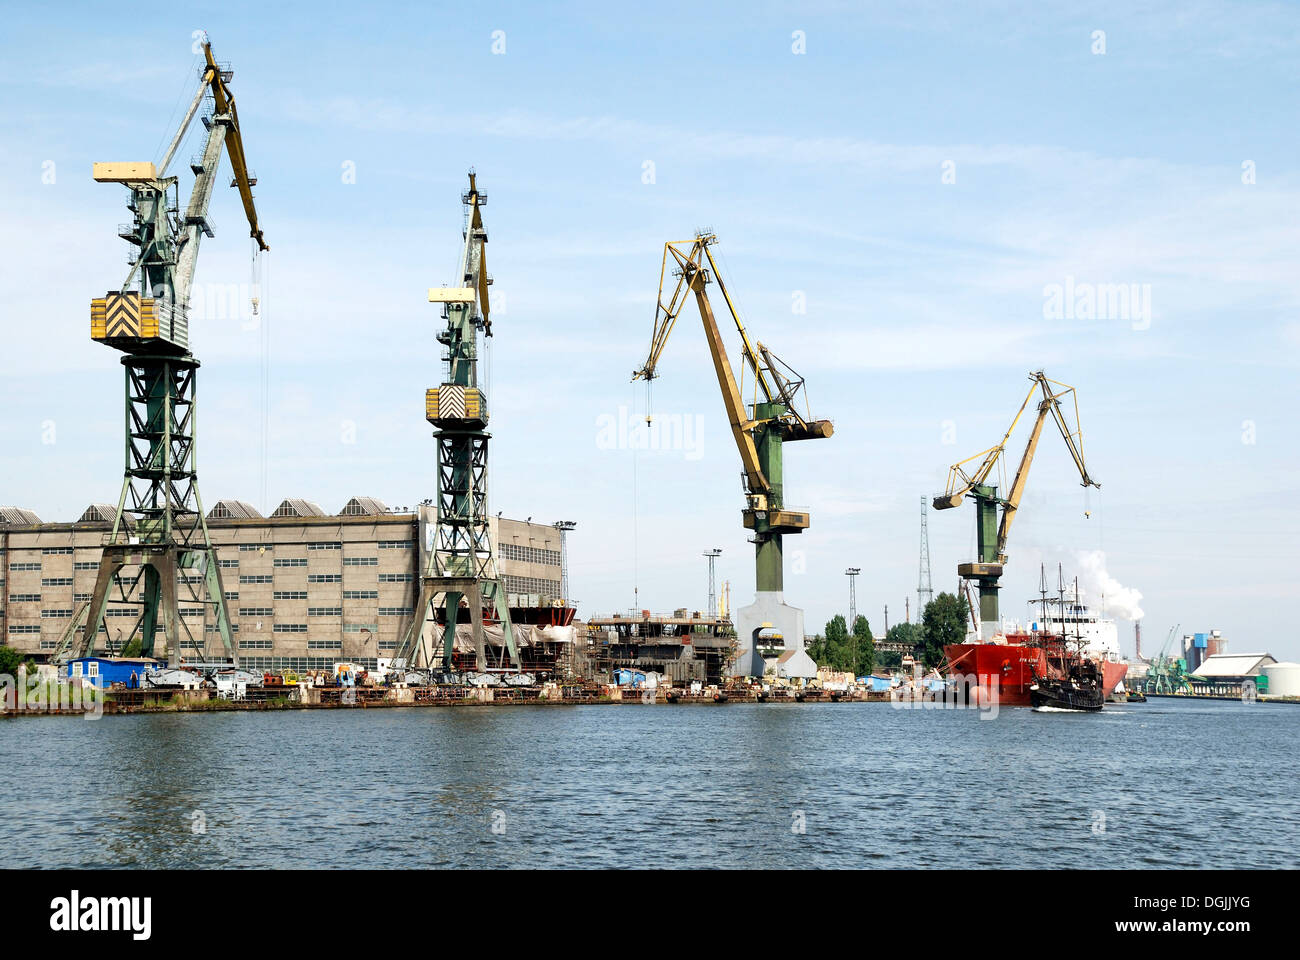 Polnischen Werft Stocznia Gdańsk an der Weichsel - Lenin-Werft von 1950 bis 1990. Stockfoto